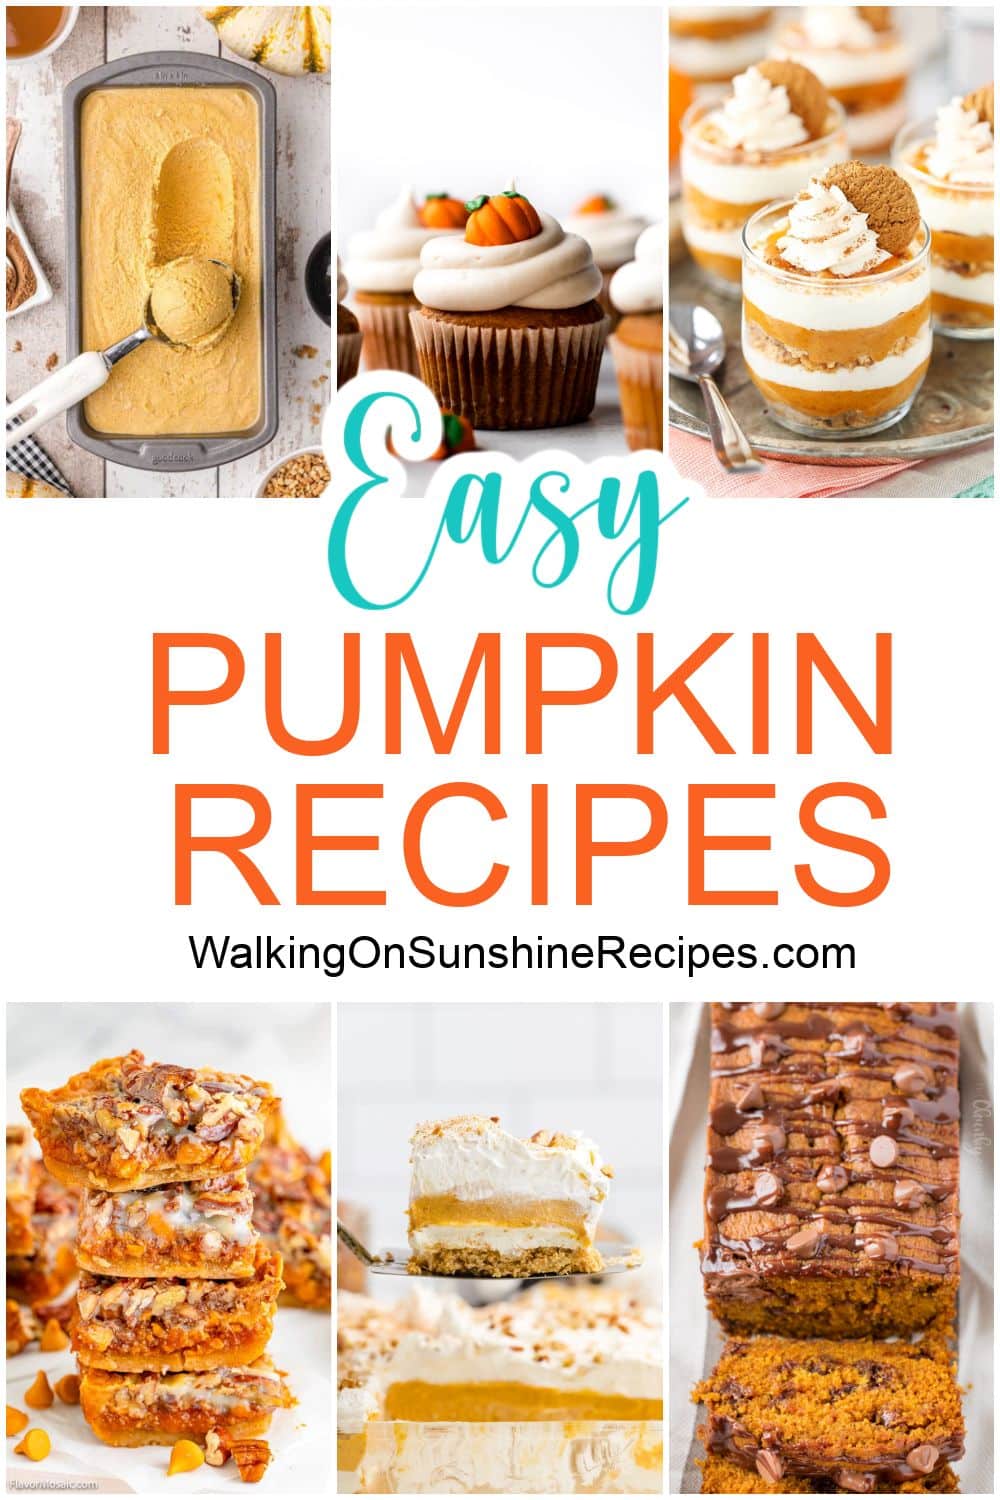 pumpkin recipes easy.